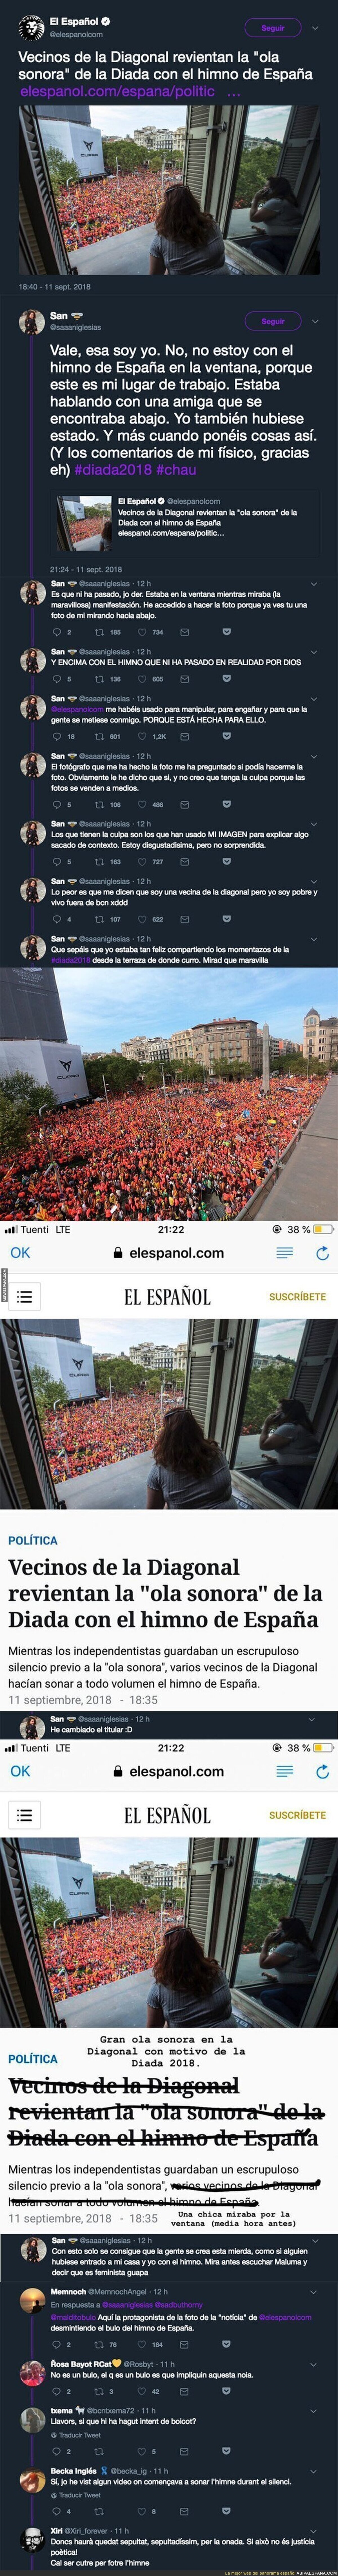 Pillan a 'El Español' manipulando descaradamente sobre una chica implicándola en poner el himno de España durante el minuto de silencio de La Diada